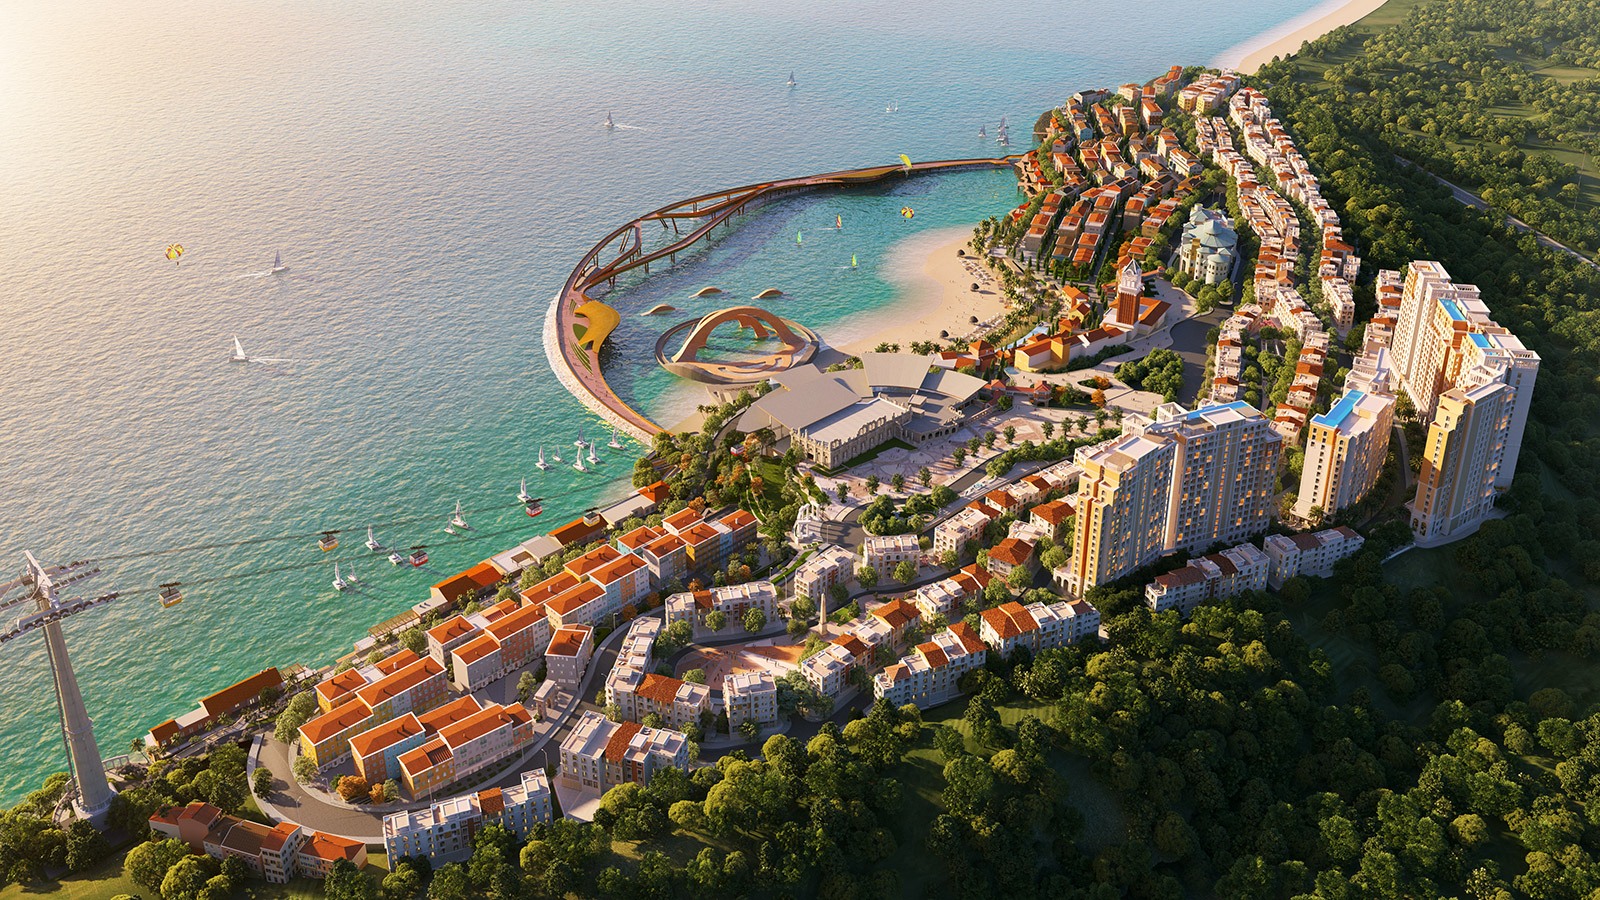 Thị trấn Địa Trung Hải được đầu tư bởi tập đoàn Sun Group tại Nam Phú Quốc